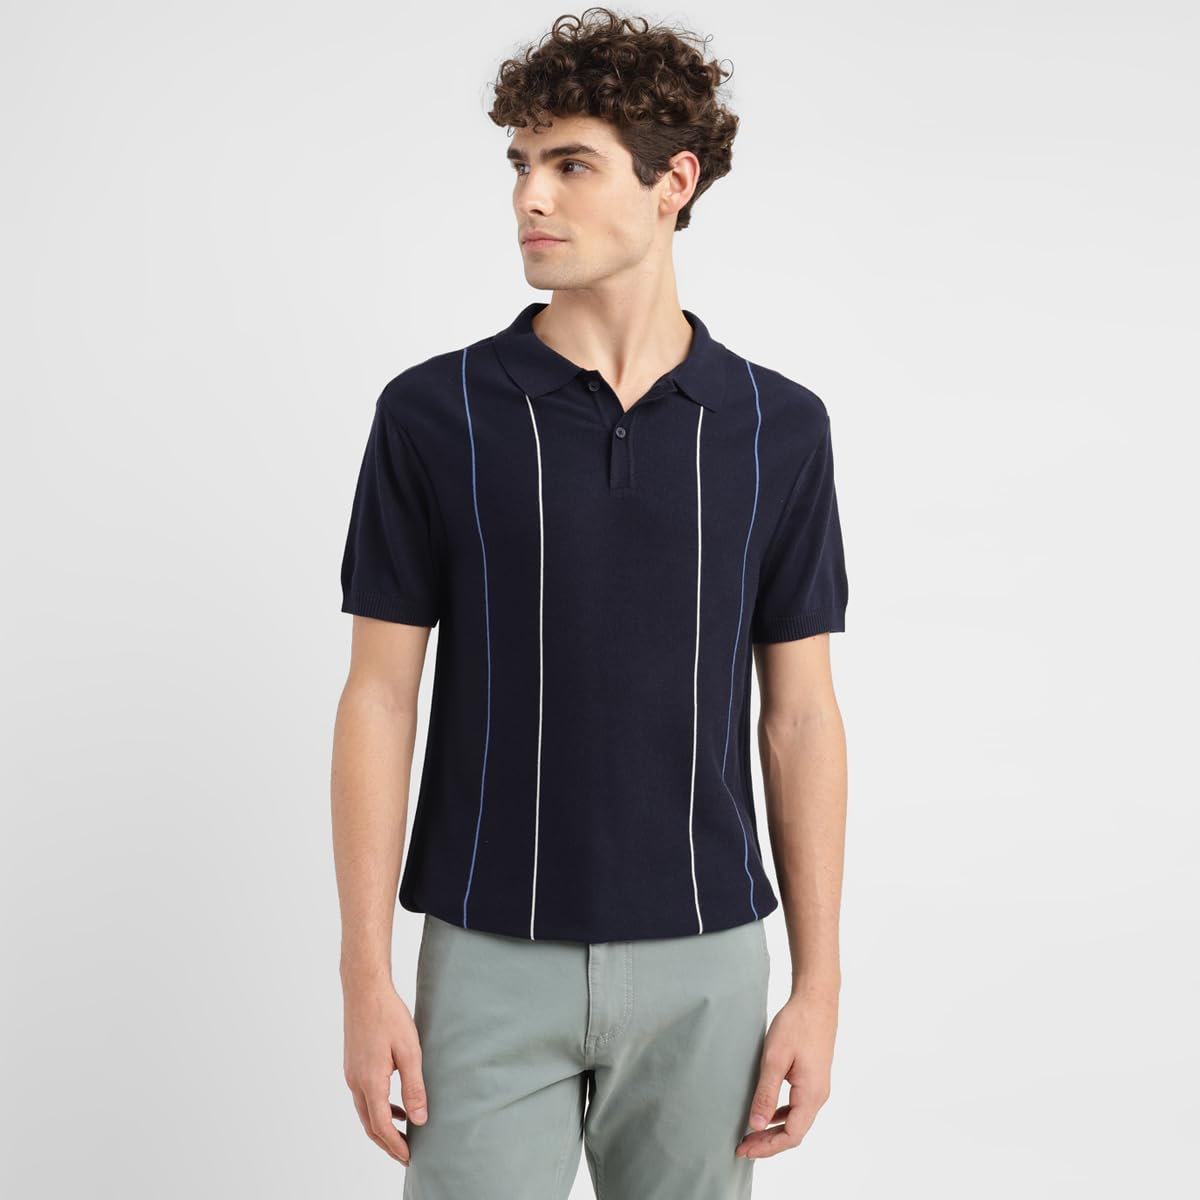 Levi's Men's Cotton Casual Sweater (A6854-0004_Blue